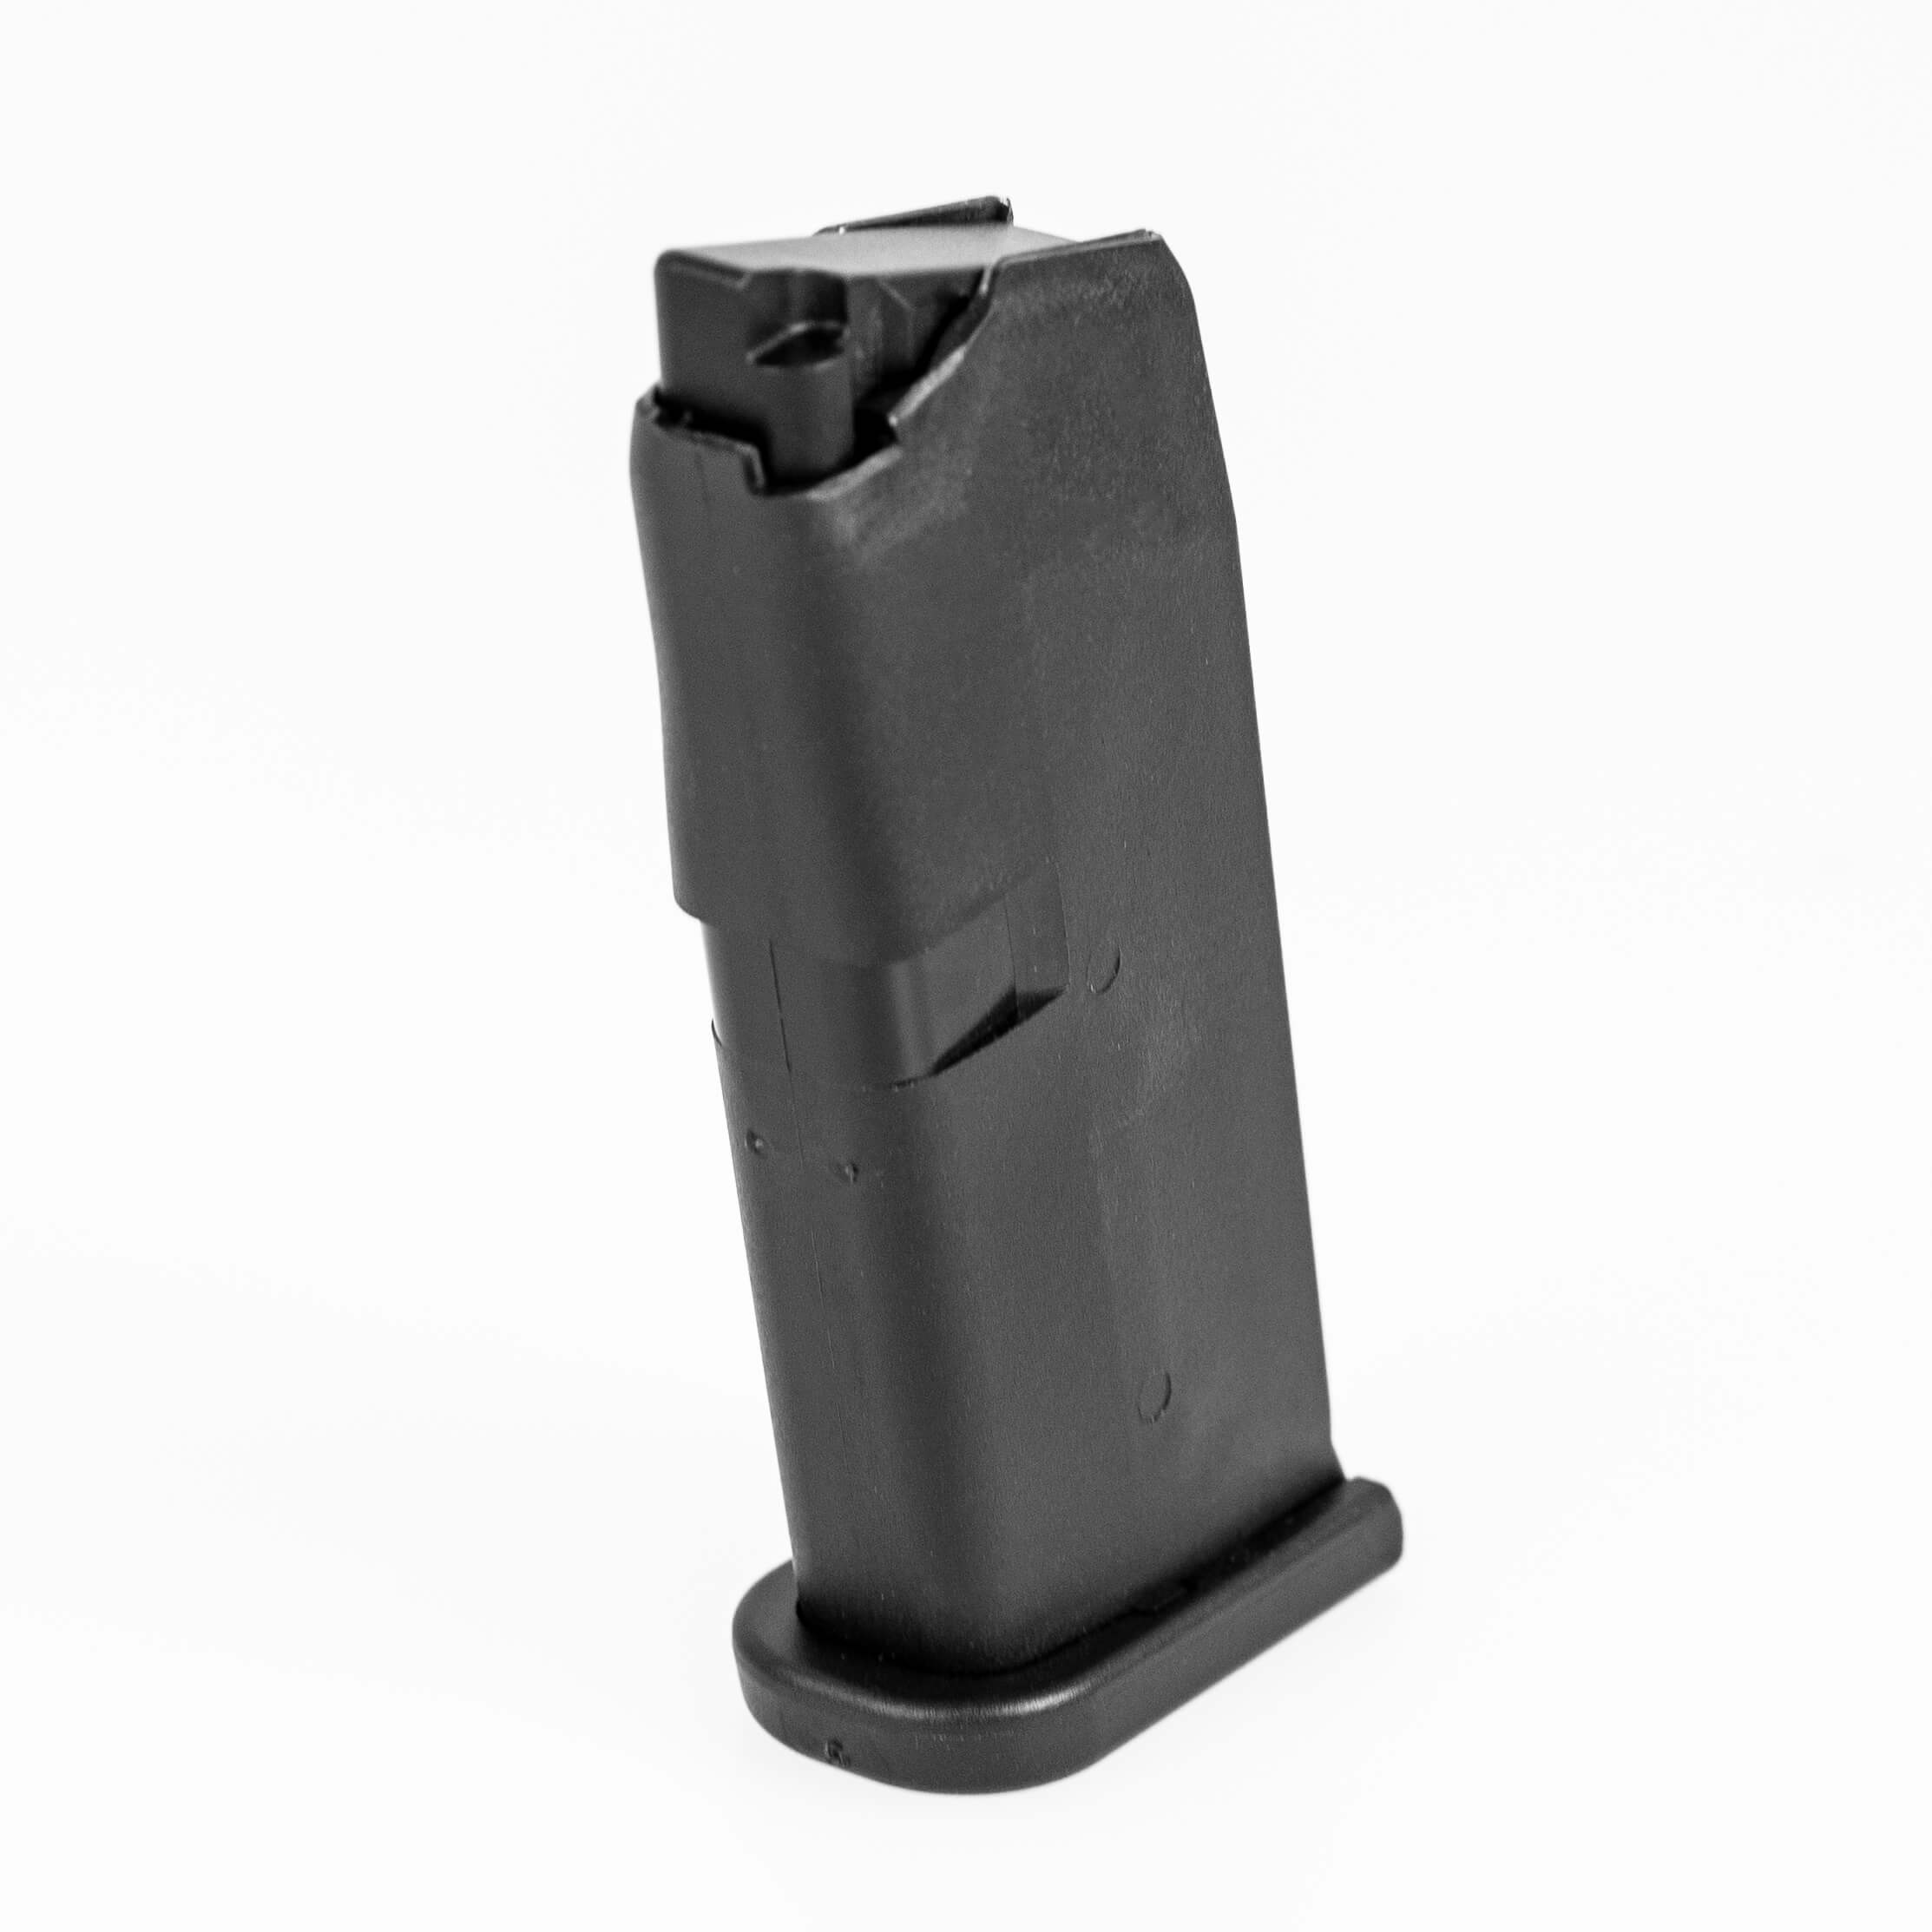 Magazin Glock 43 Kaliber 9mm Luger